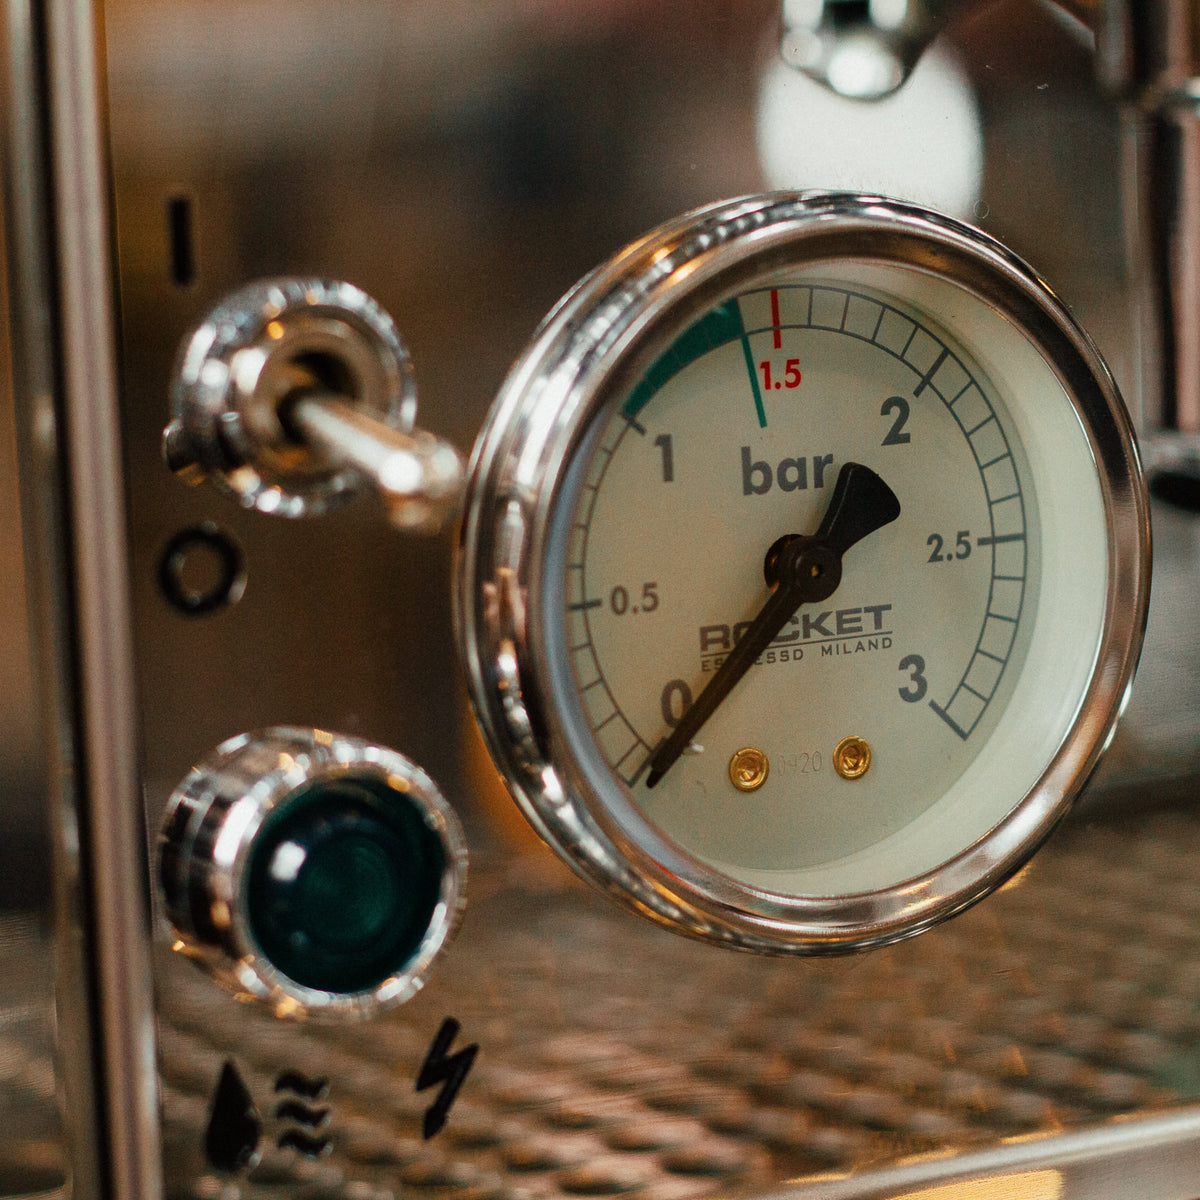 Rocket Giotto Type V | Best Espresso Machines | Barista Coffee 